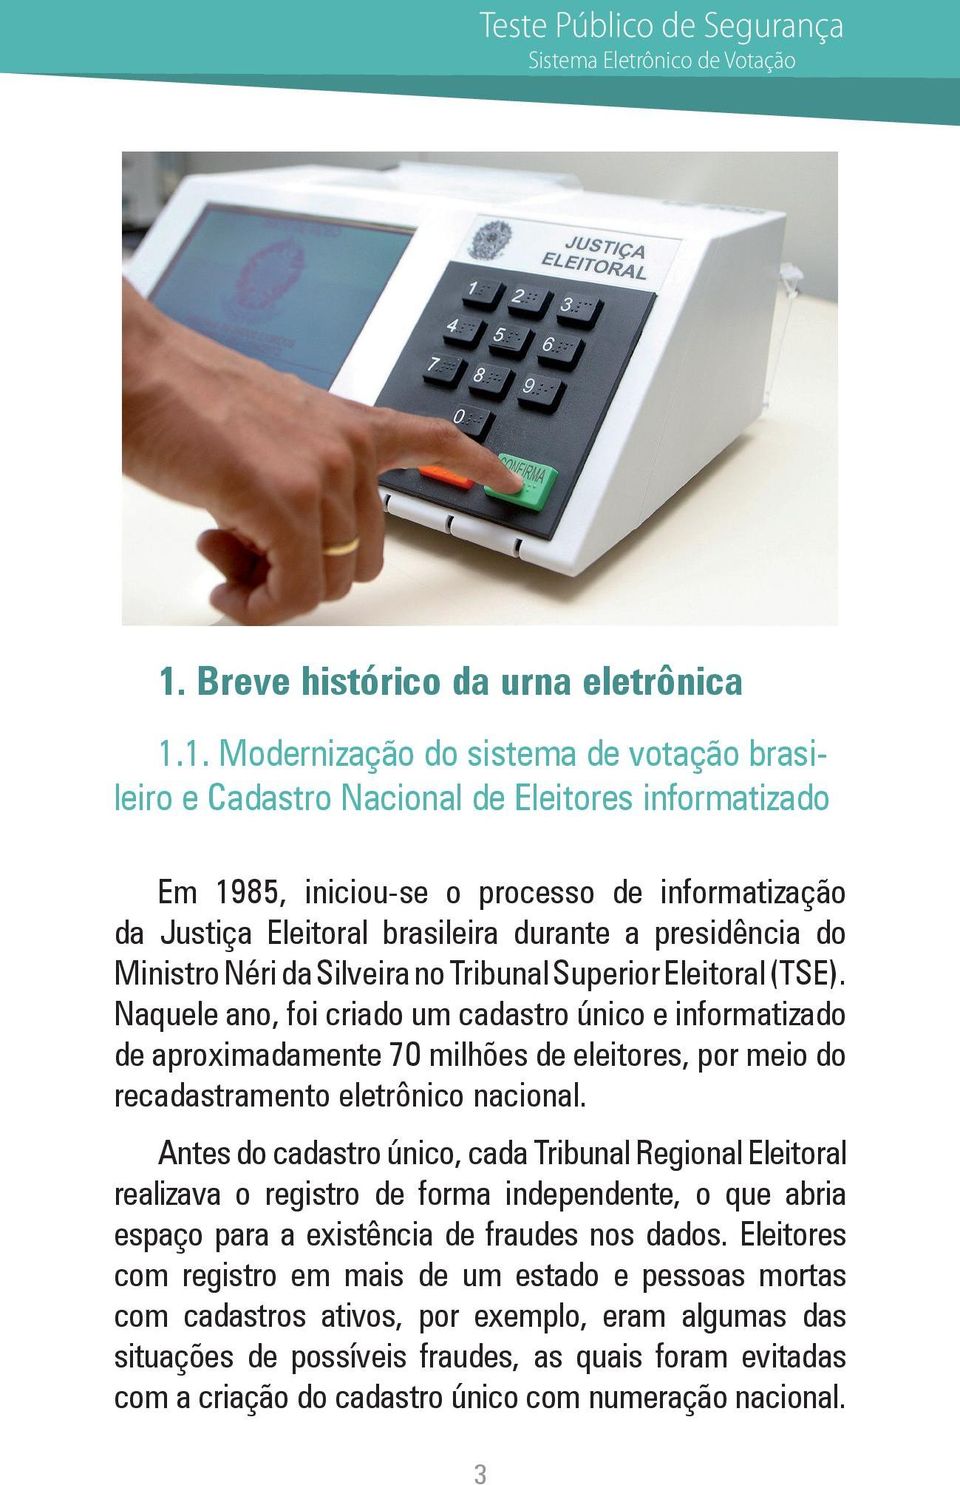 1. Modernização do sistema de votação brasileiro e Cadastro Nacional de Eleitores informatizado Em 1985, iniciou-se o processo de informatização da Justiça Eleitoral brasileira durante a presidência